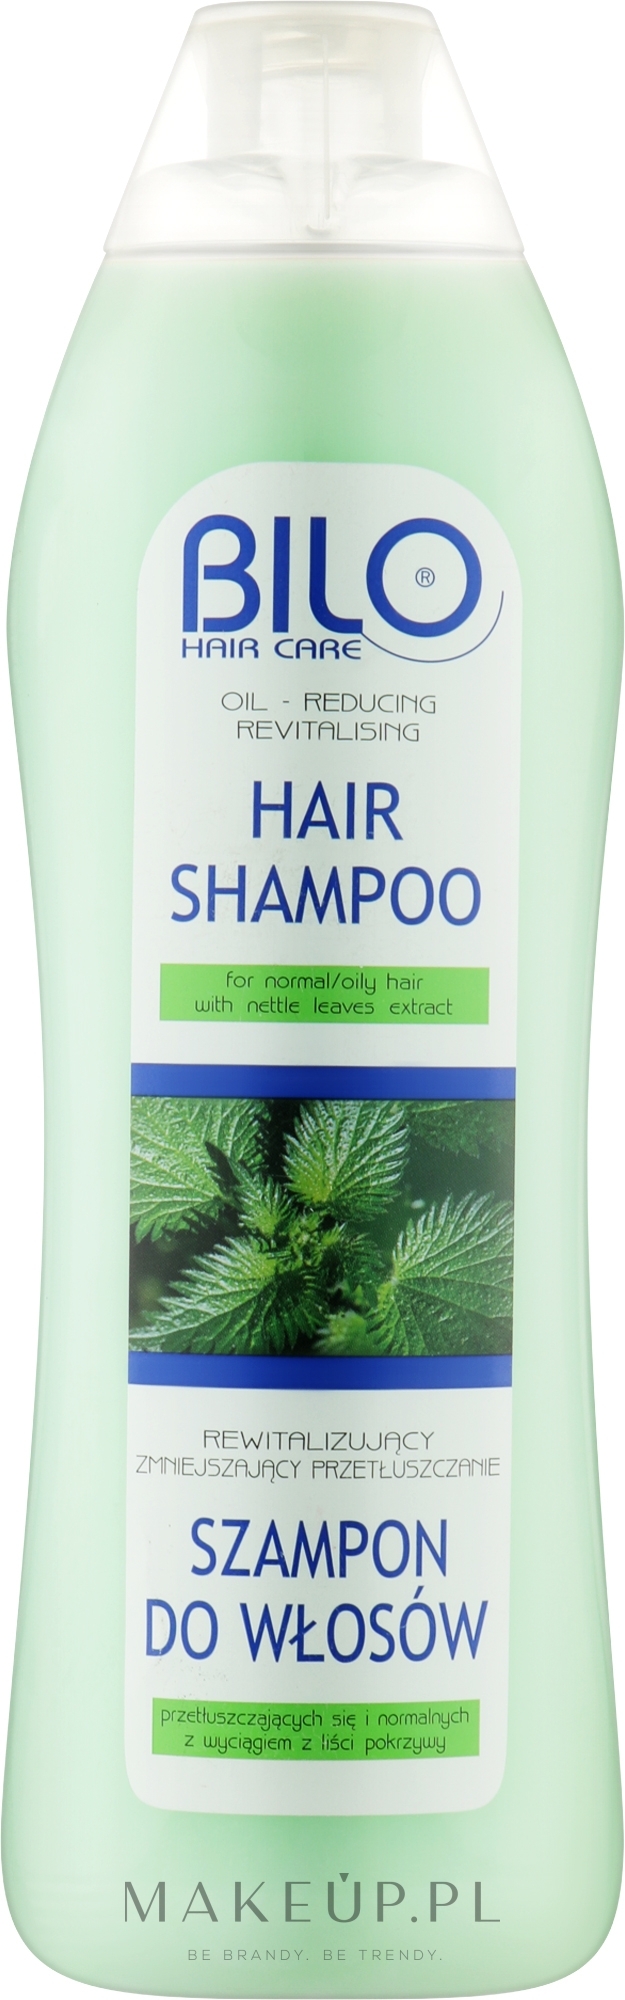 Rewitalizujący i zmniejszający przetłuszczenie szampon do włosów z wyciągiem z liści pokrzywy - BILO — Zdjęcie 1000 ml